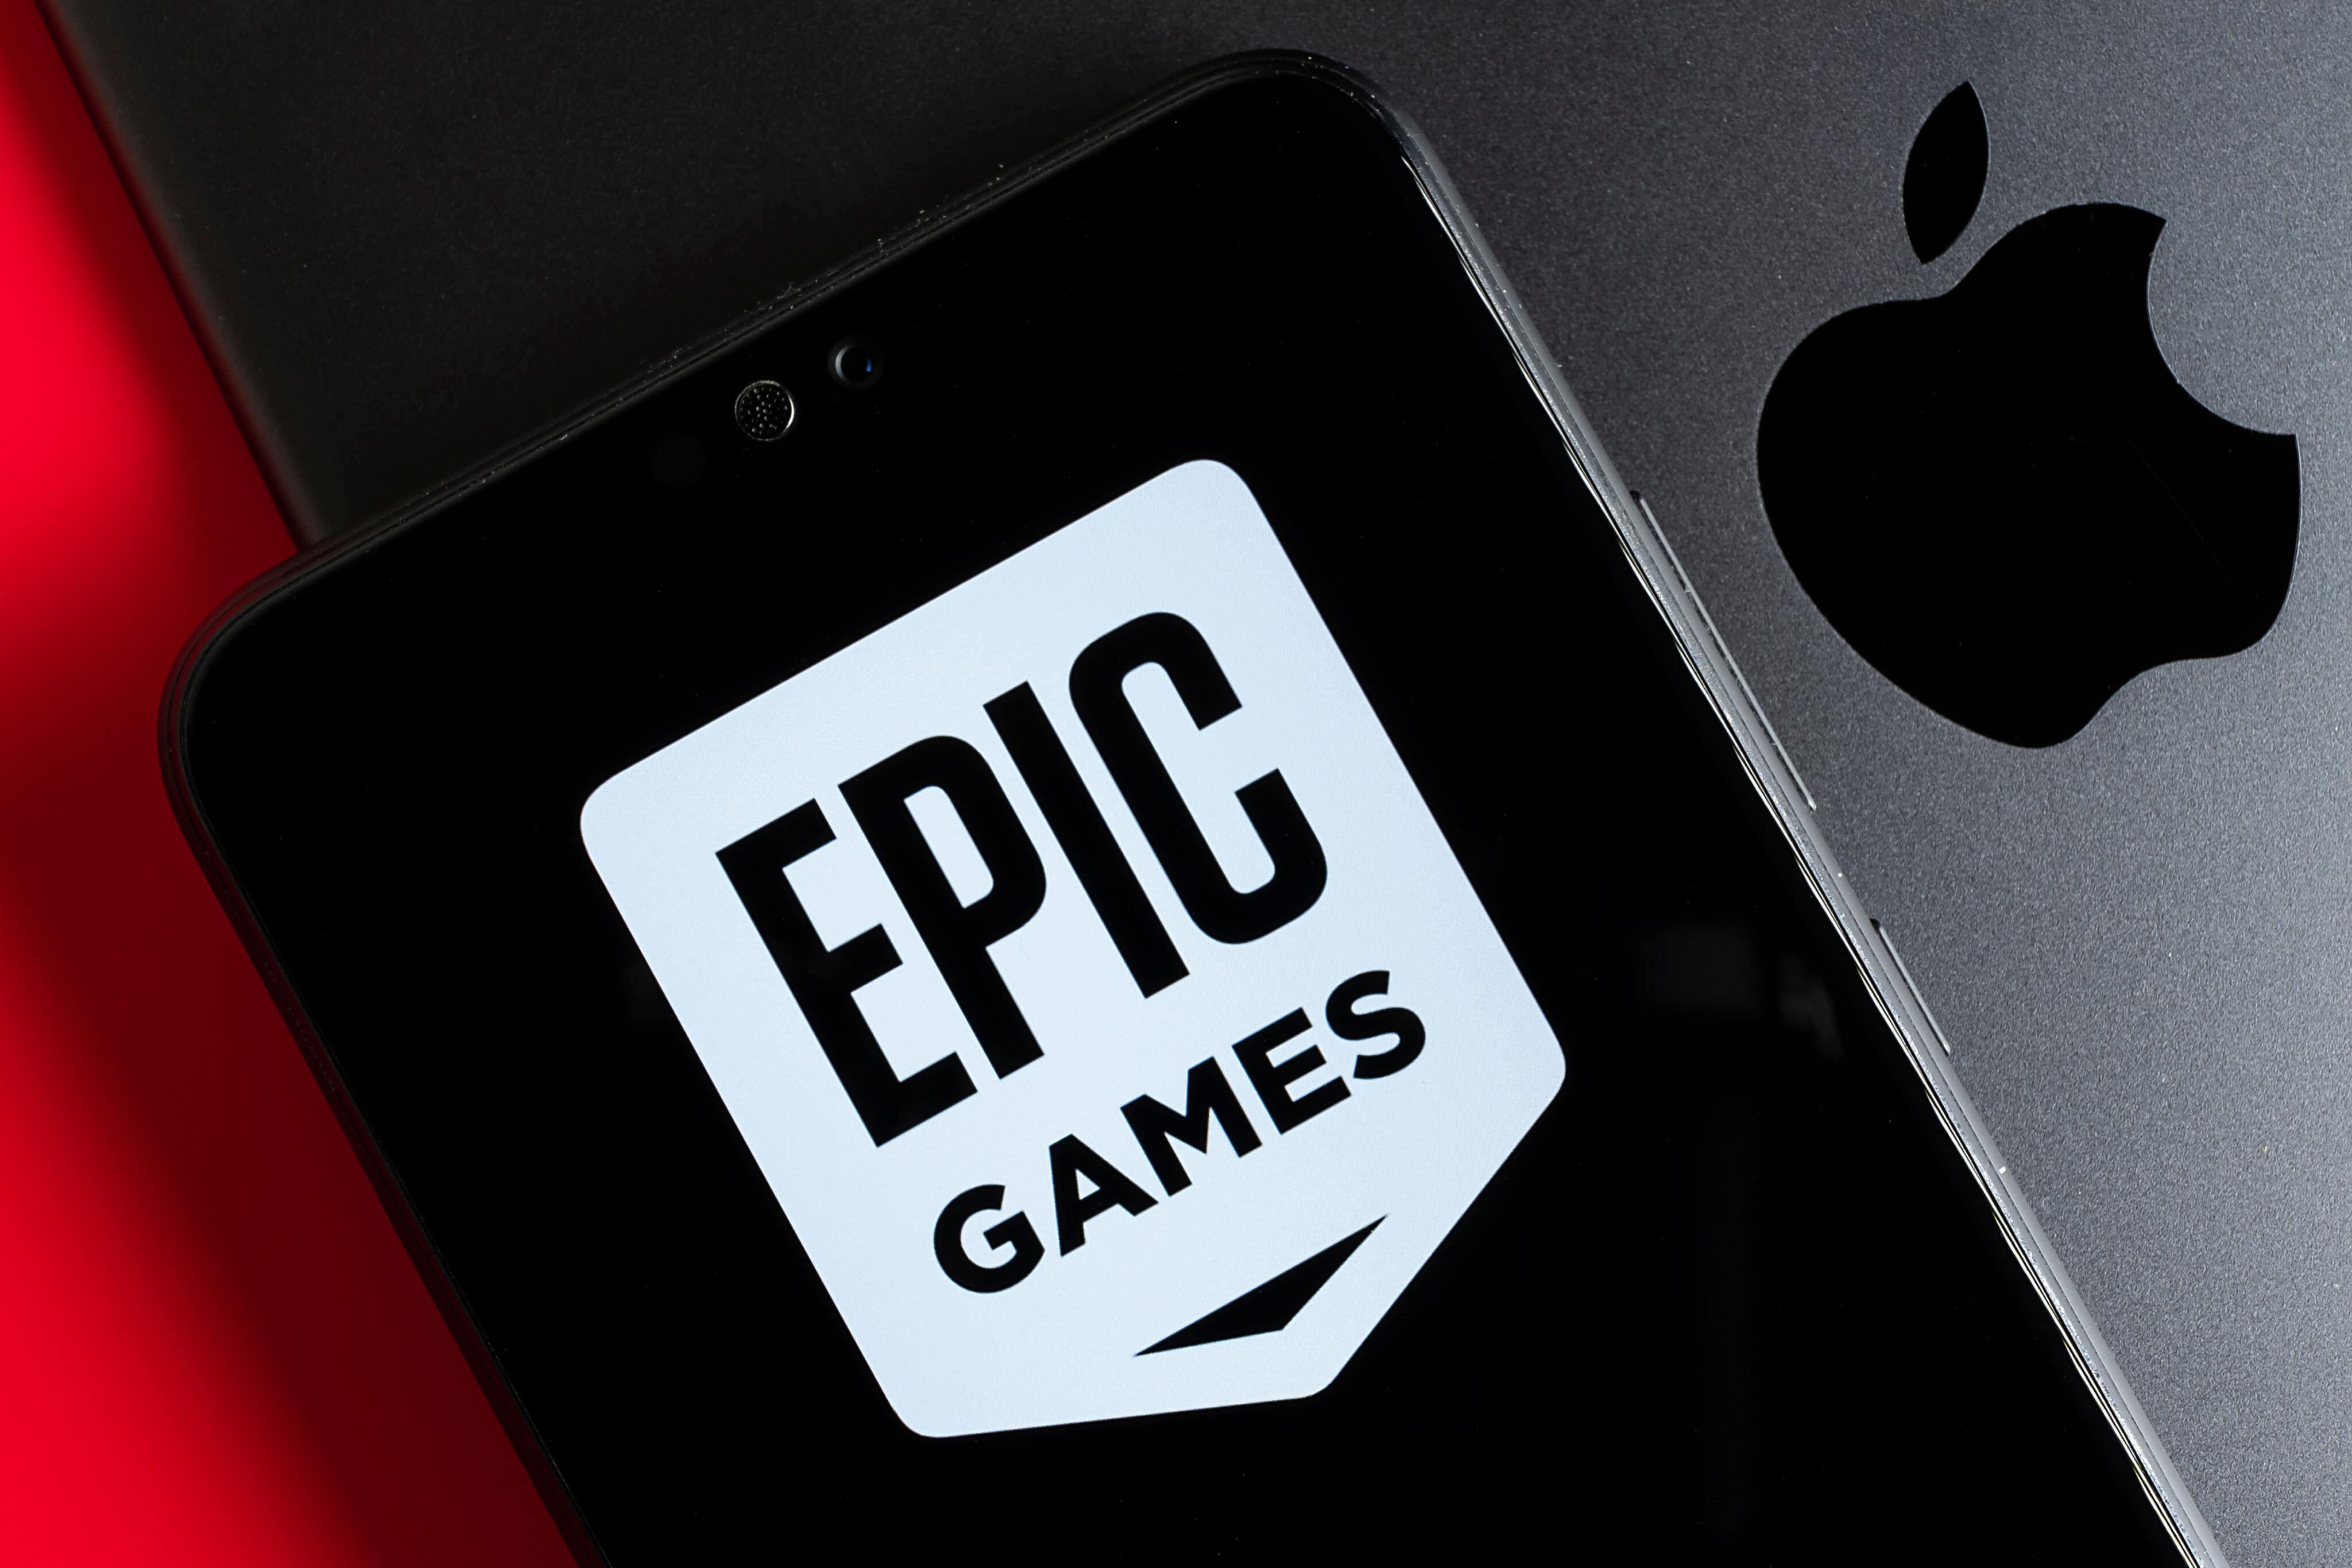 Epic Games vence Google em processo contra práticas